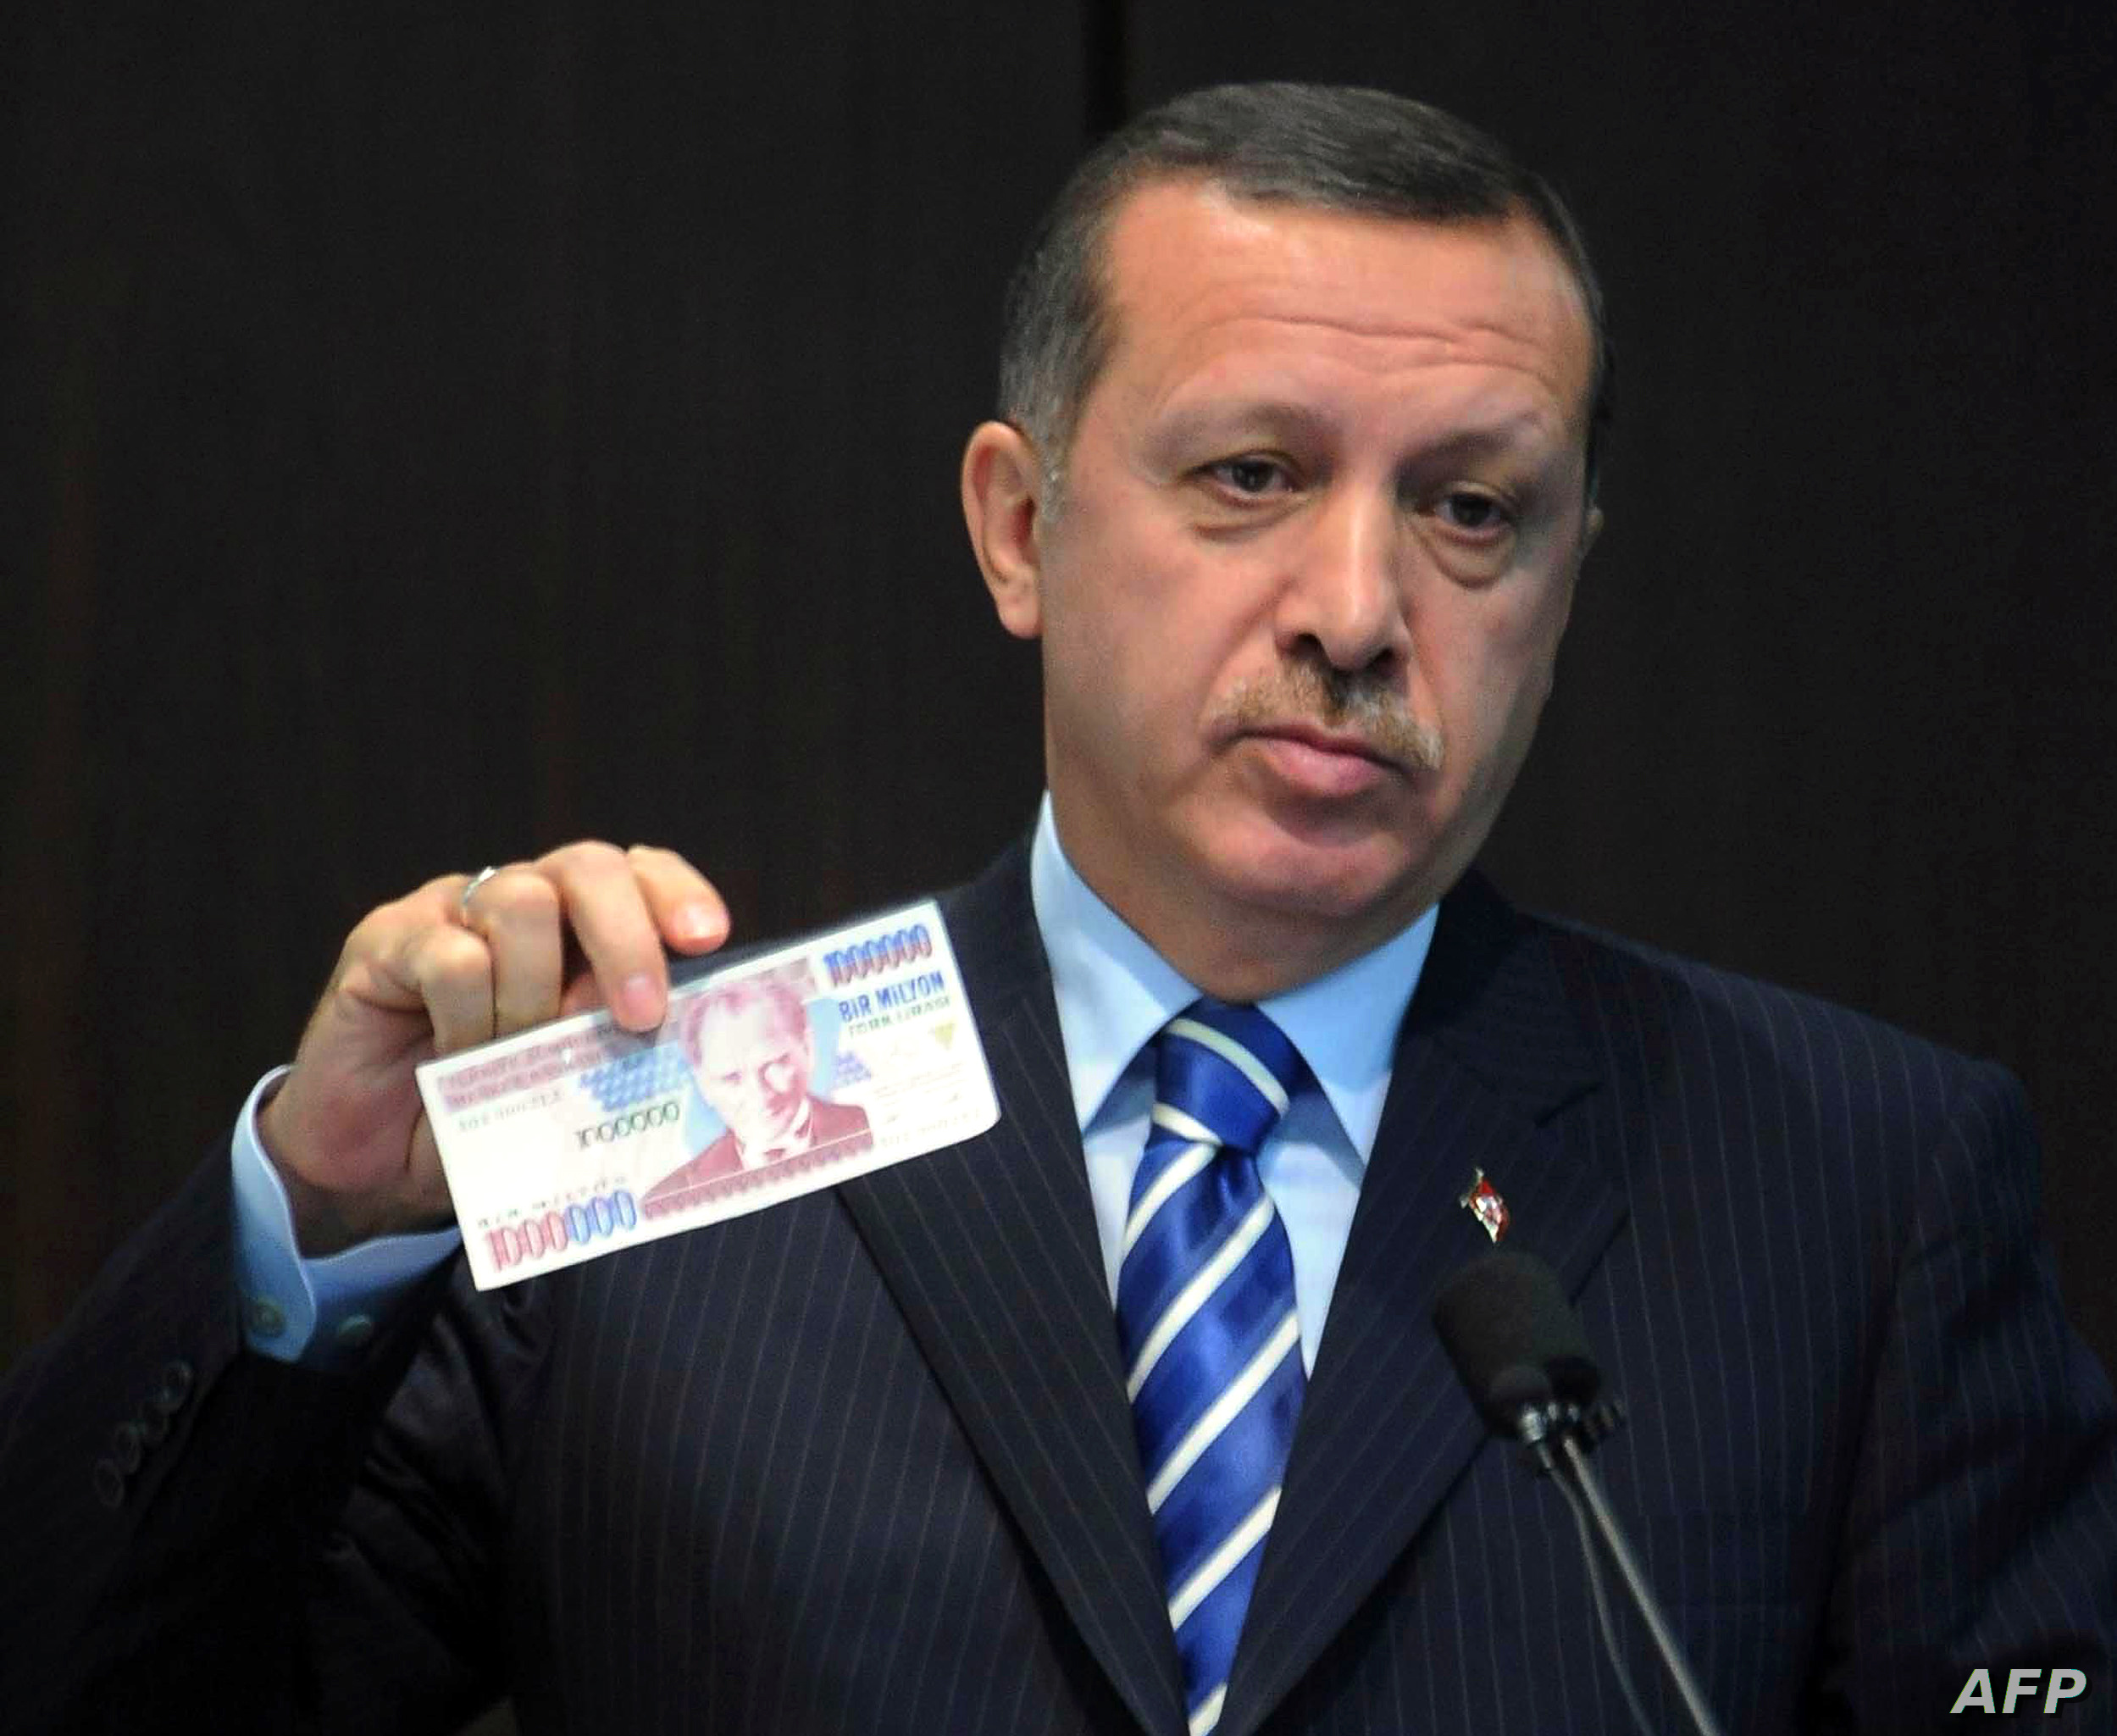 الرئيس التركي رجب طيب أردوغان يعرض عملة ورقية من الليرة التركية القديمة - "فرانس برس"